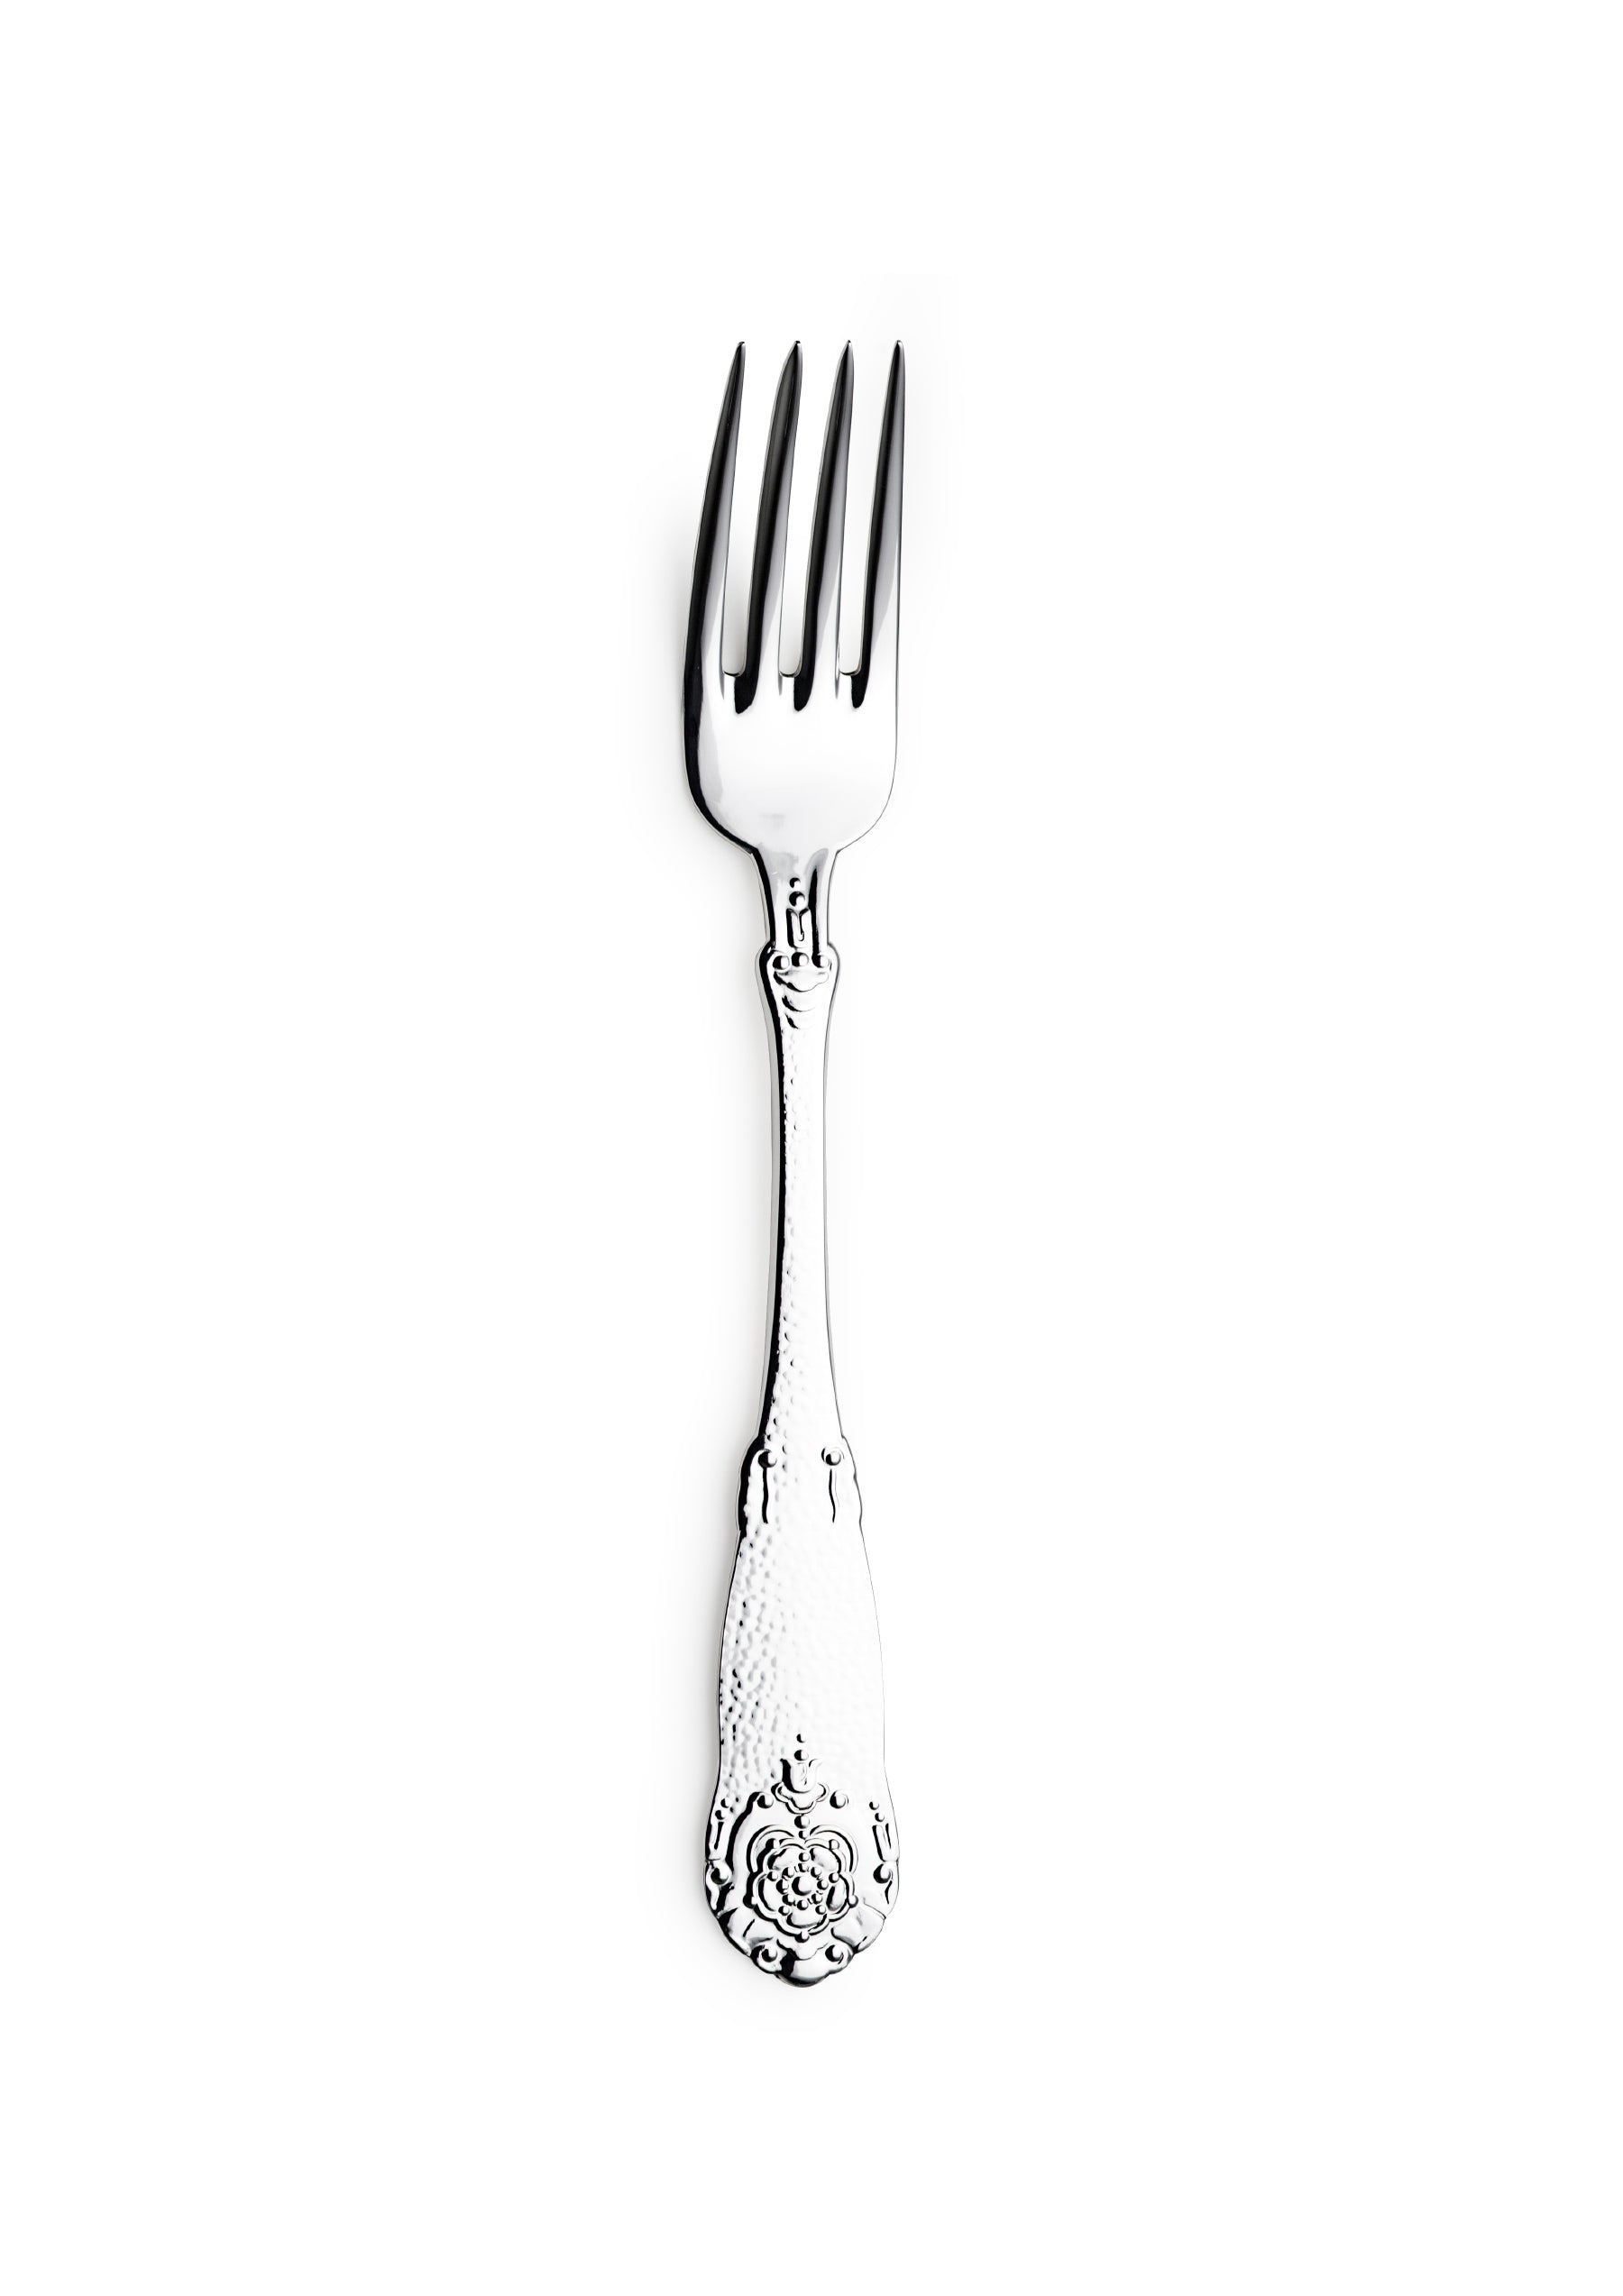 Hardanger small dining fork